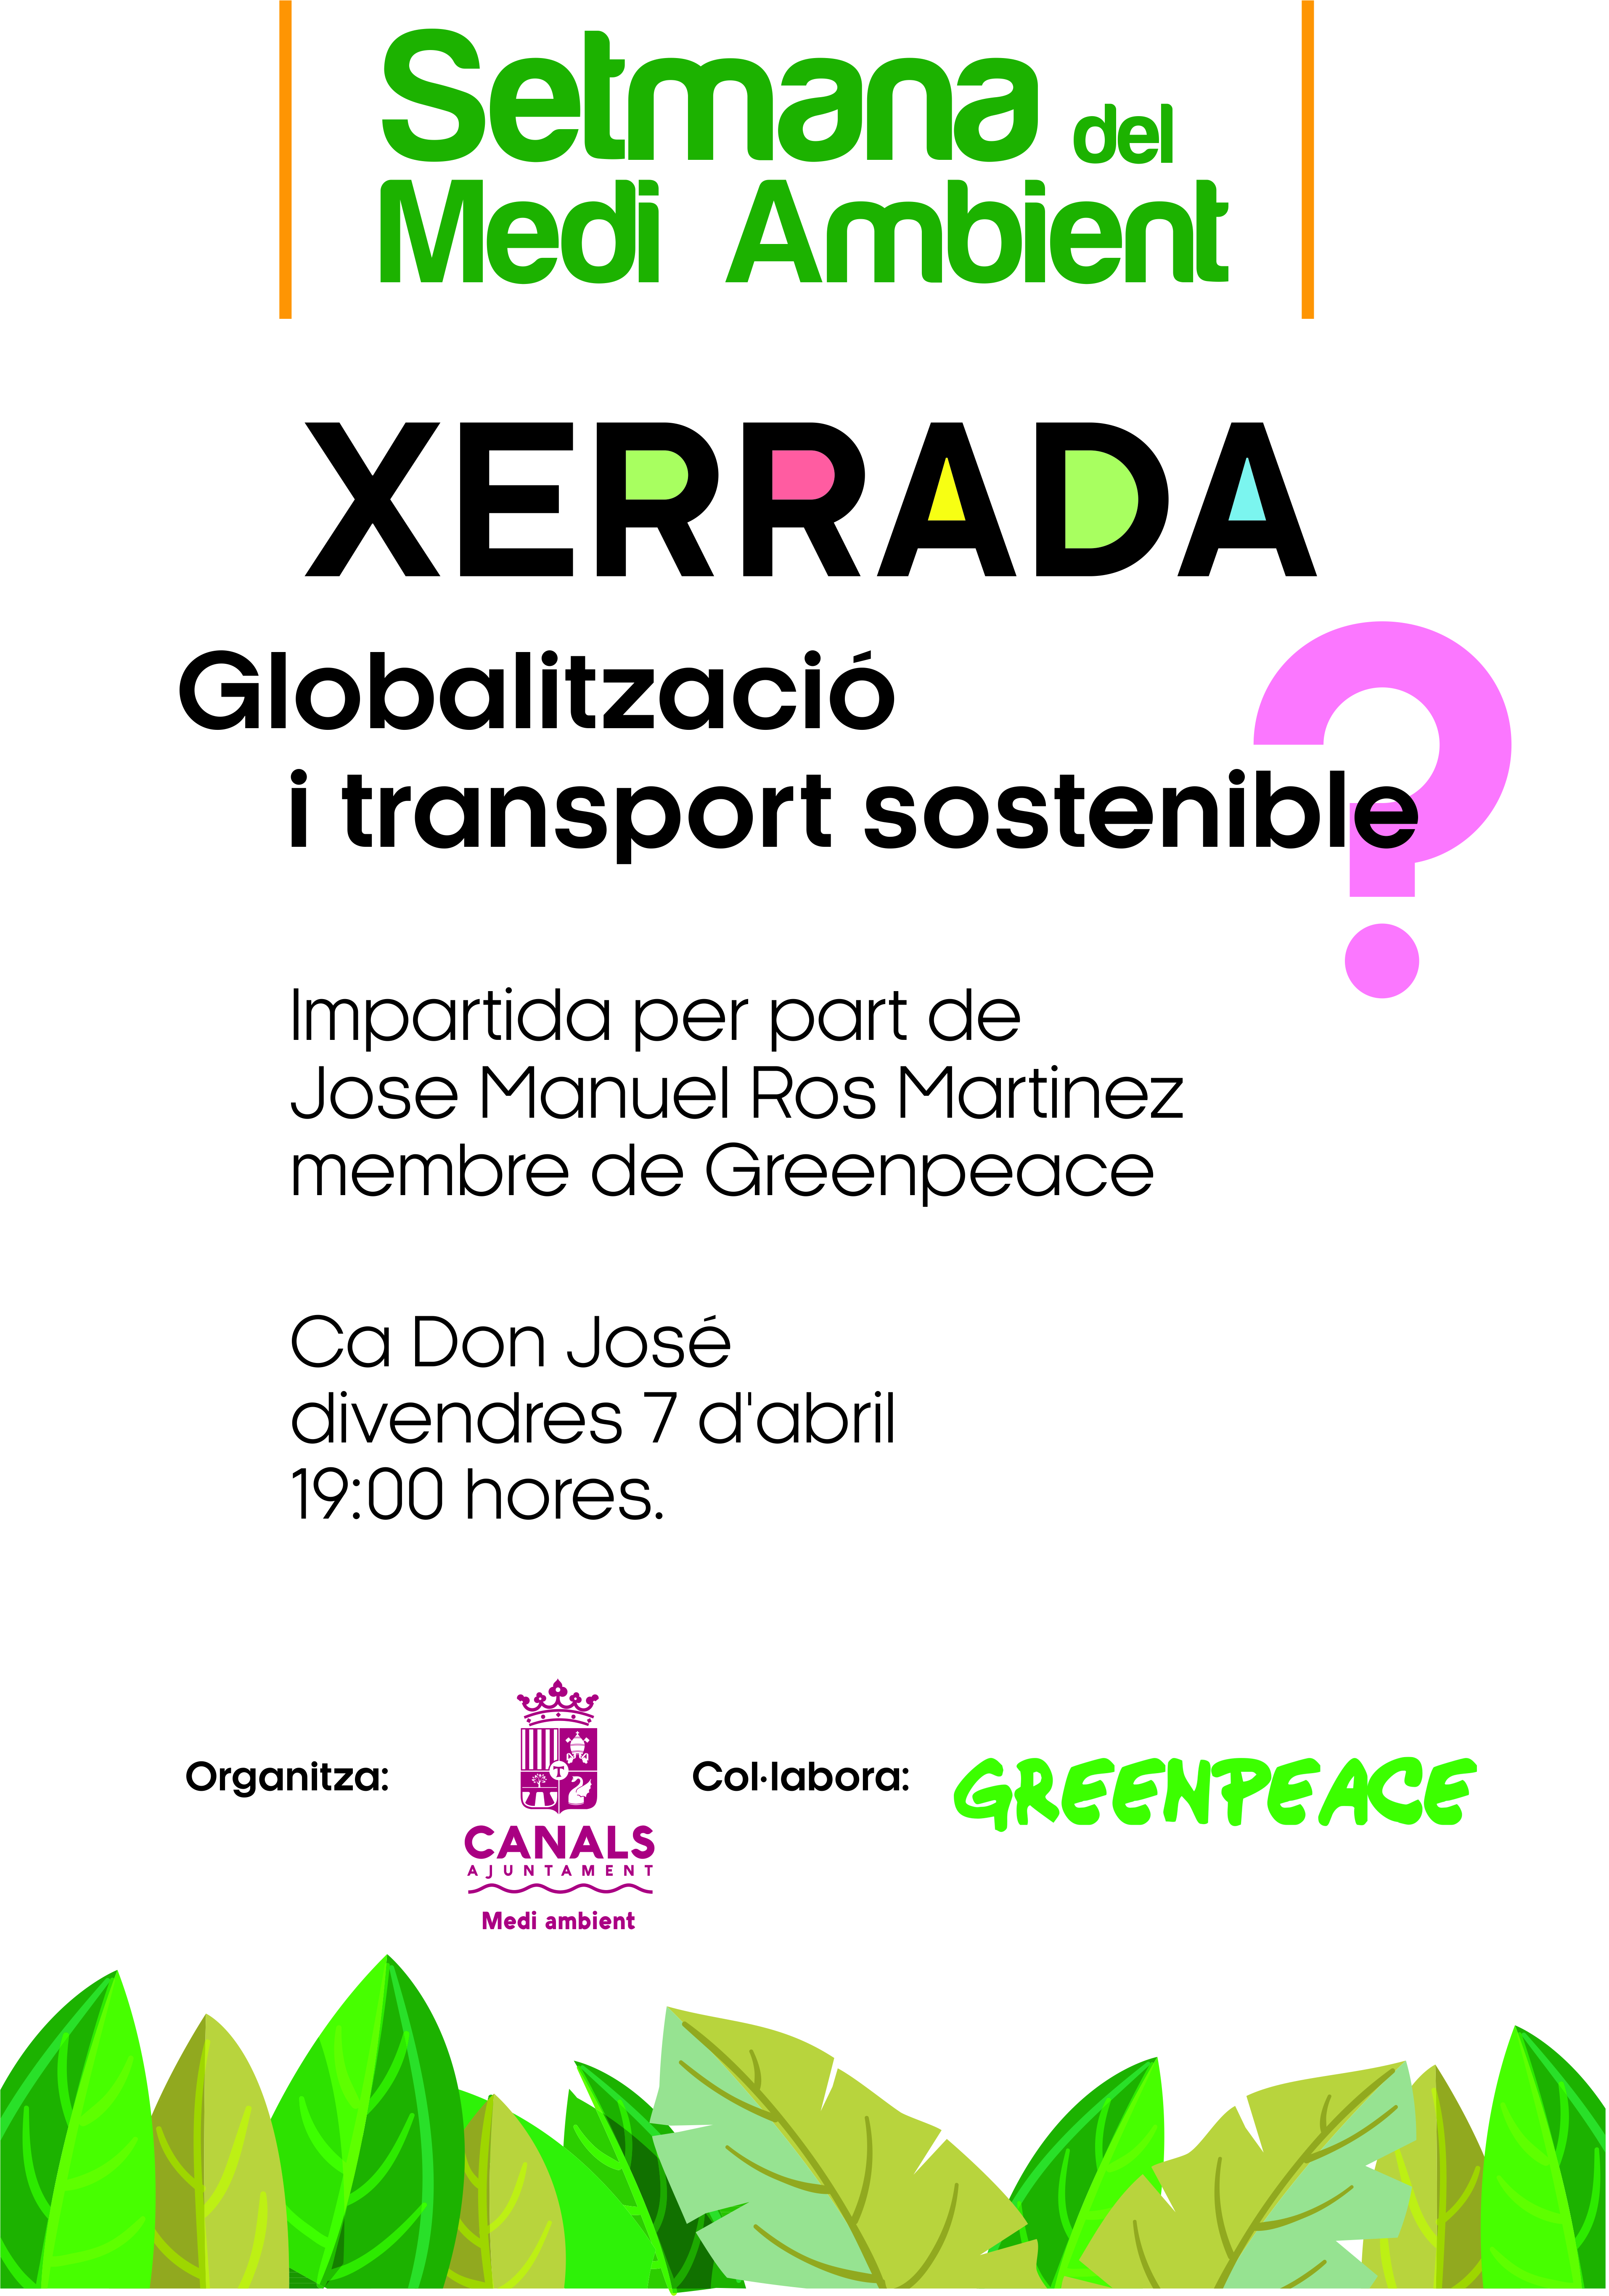 2017.04.06 Xerrada Globalització Greenpeace. Ajuntament Canals